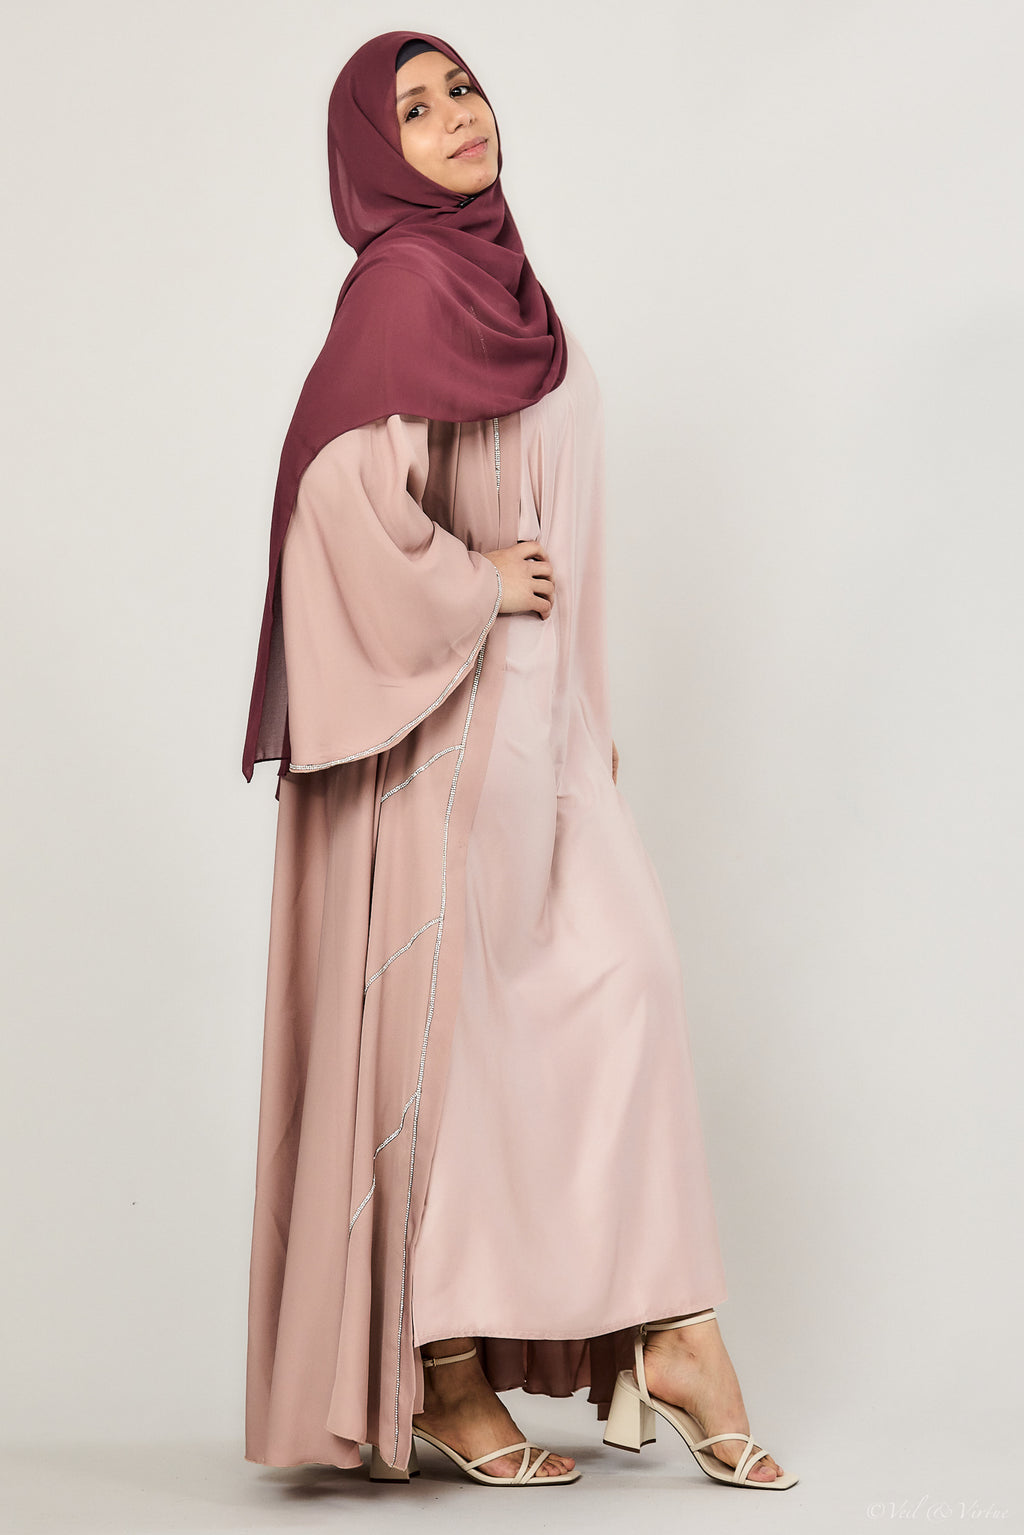 Blush Short-Sleeved Satin Abaya Slip Dress